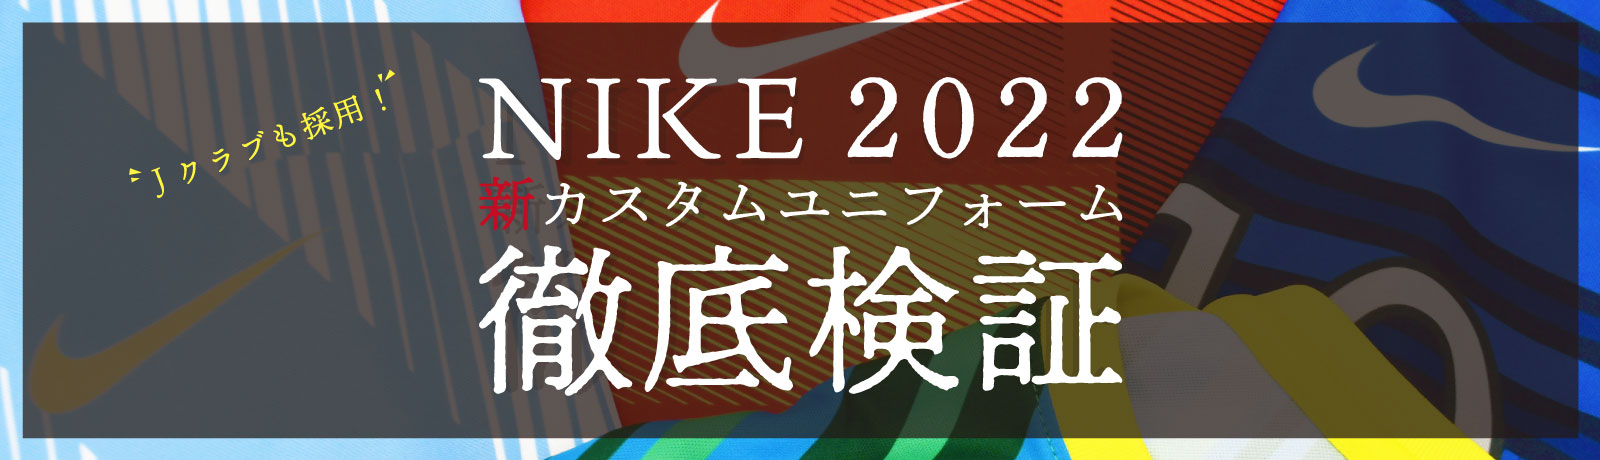 ナイキ 2022 ユニフォーム></picture></a><a href=